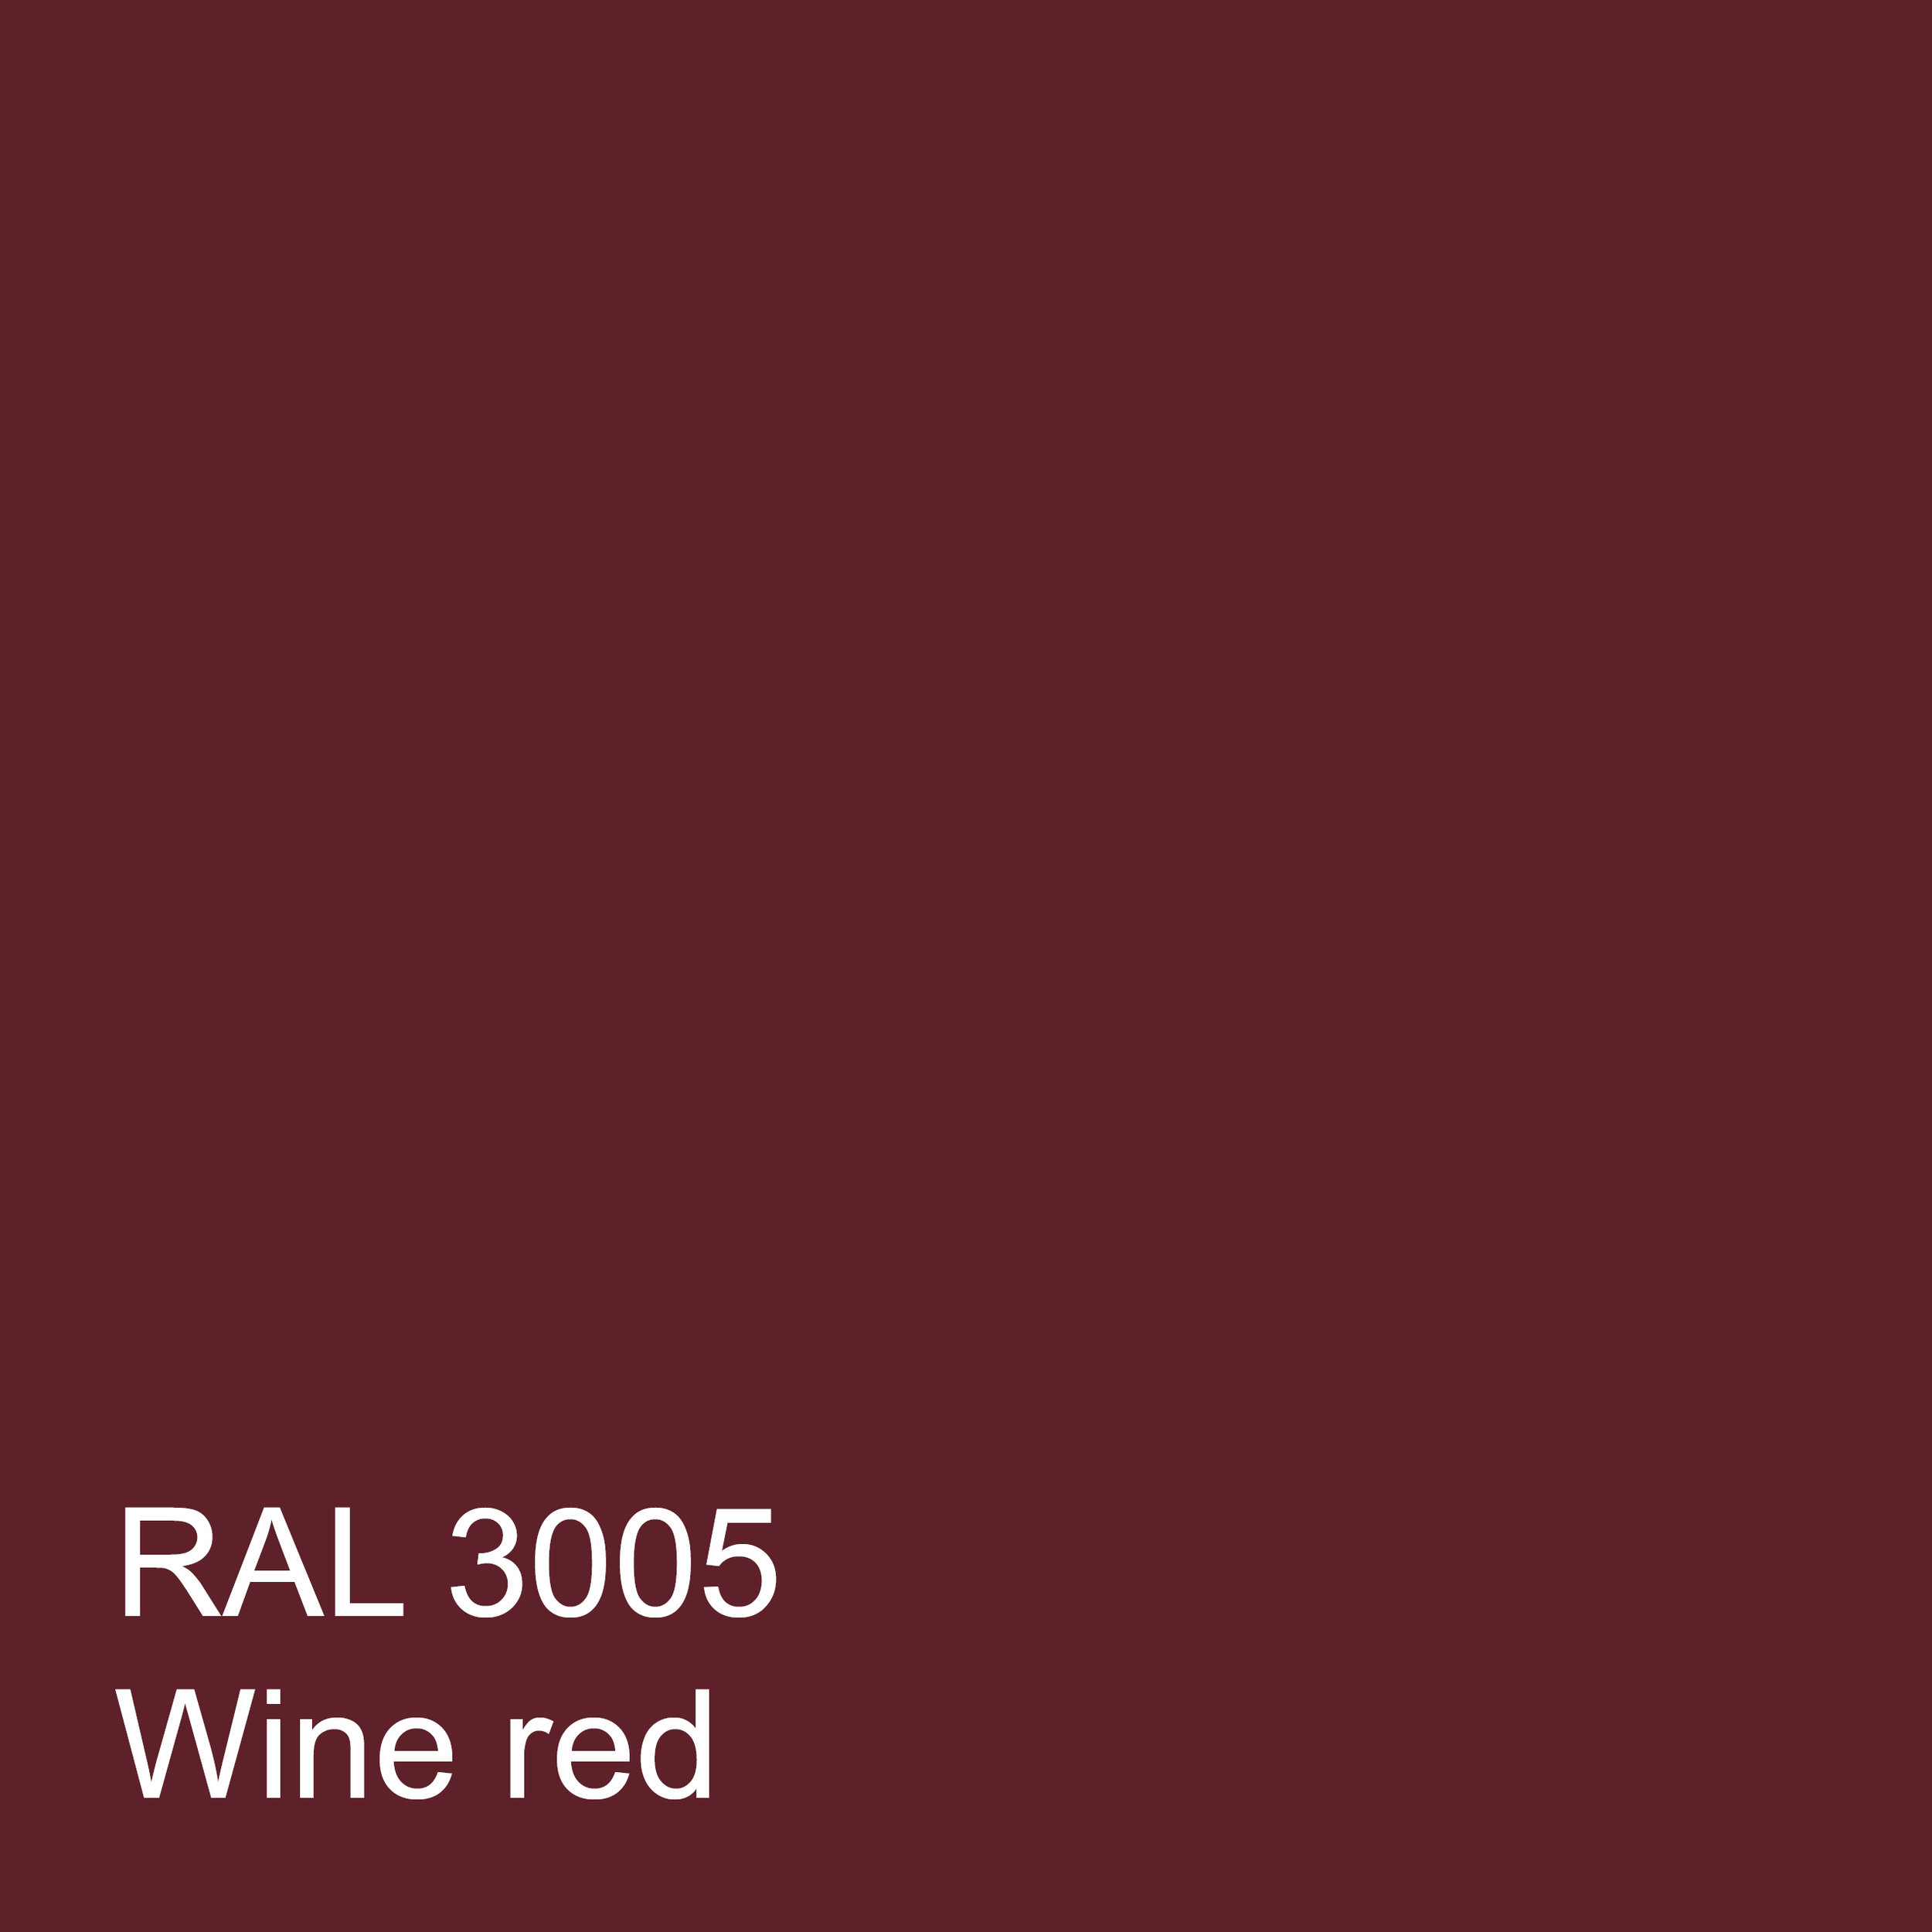 RAL 3005 WINE RED.jpg